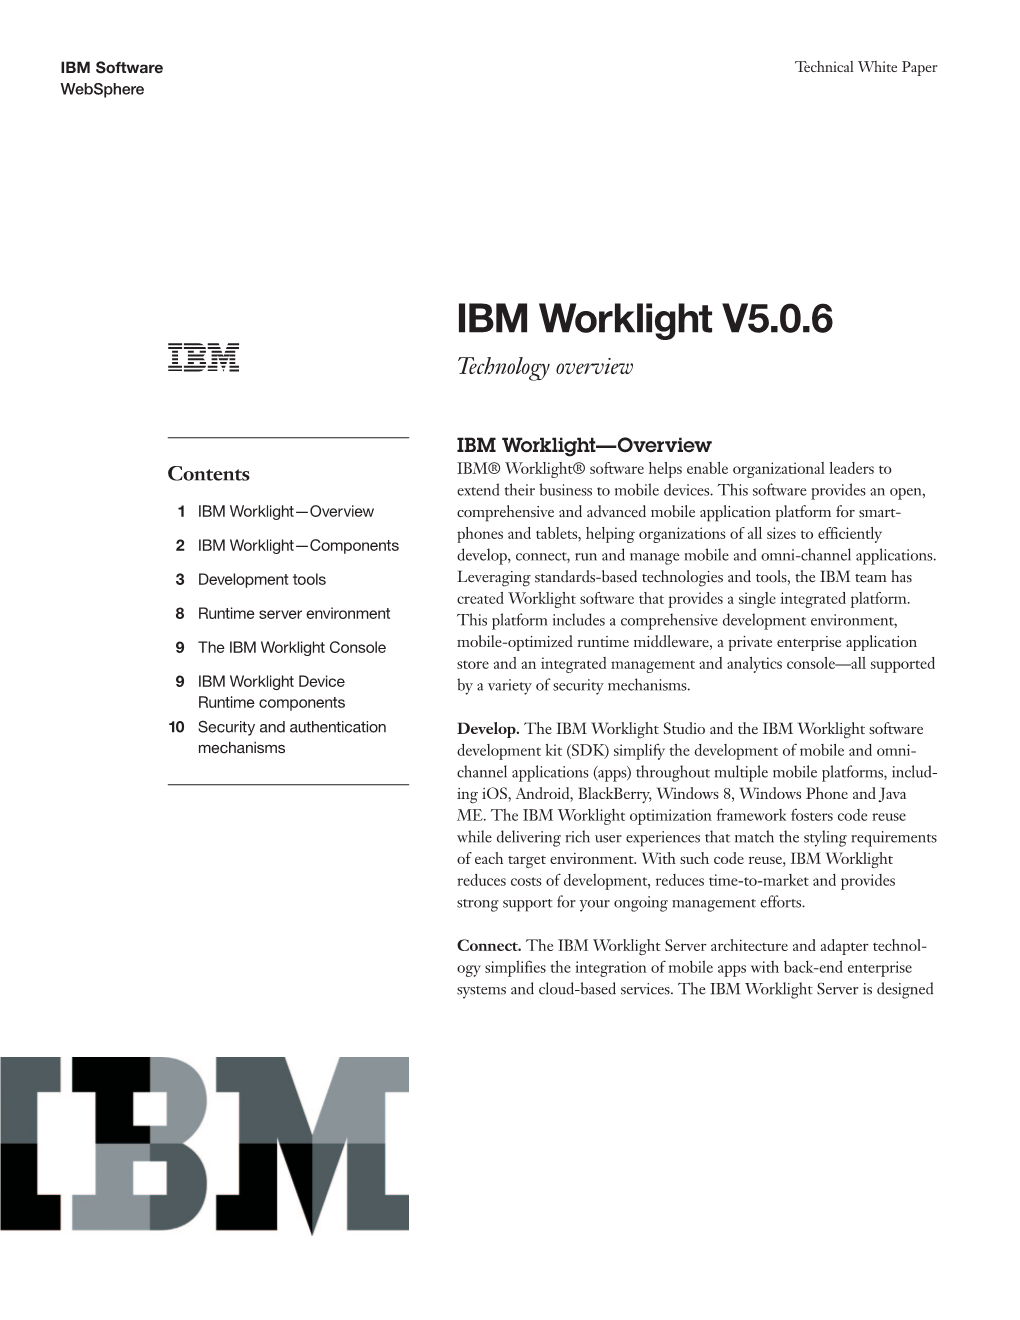 IBM Worklight V5.0.6 Technology Overview